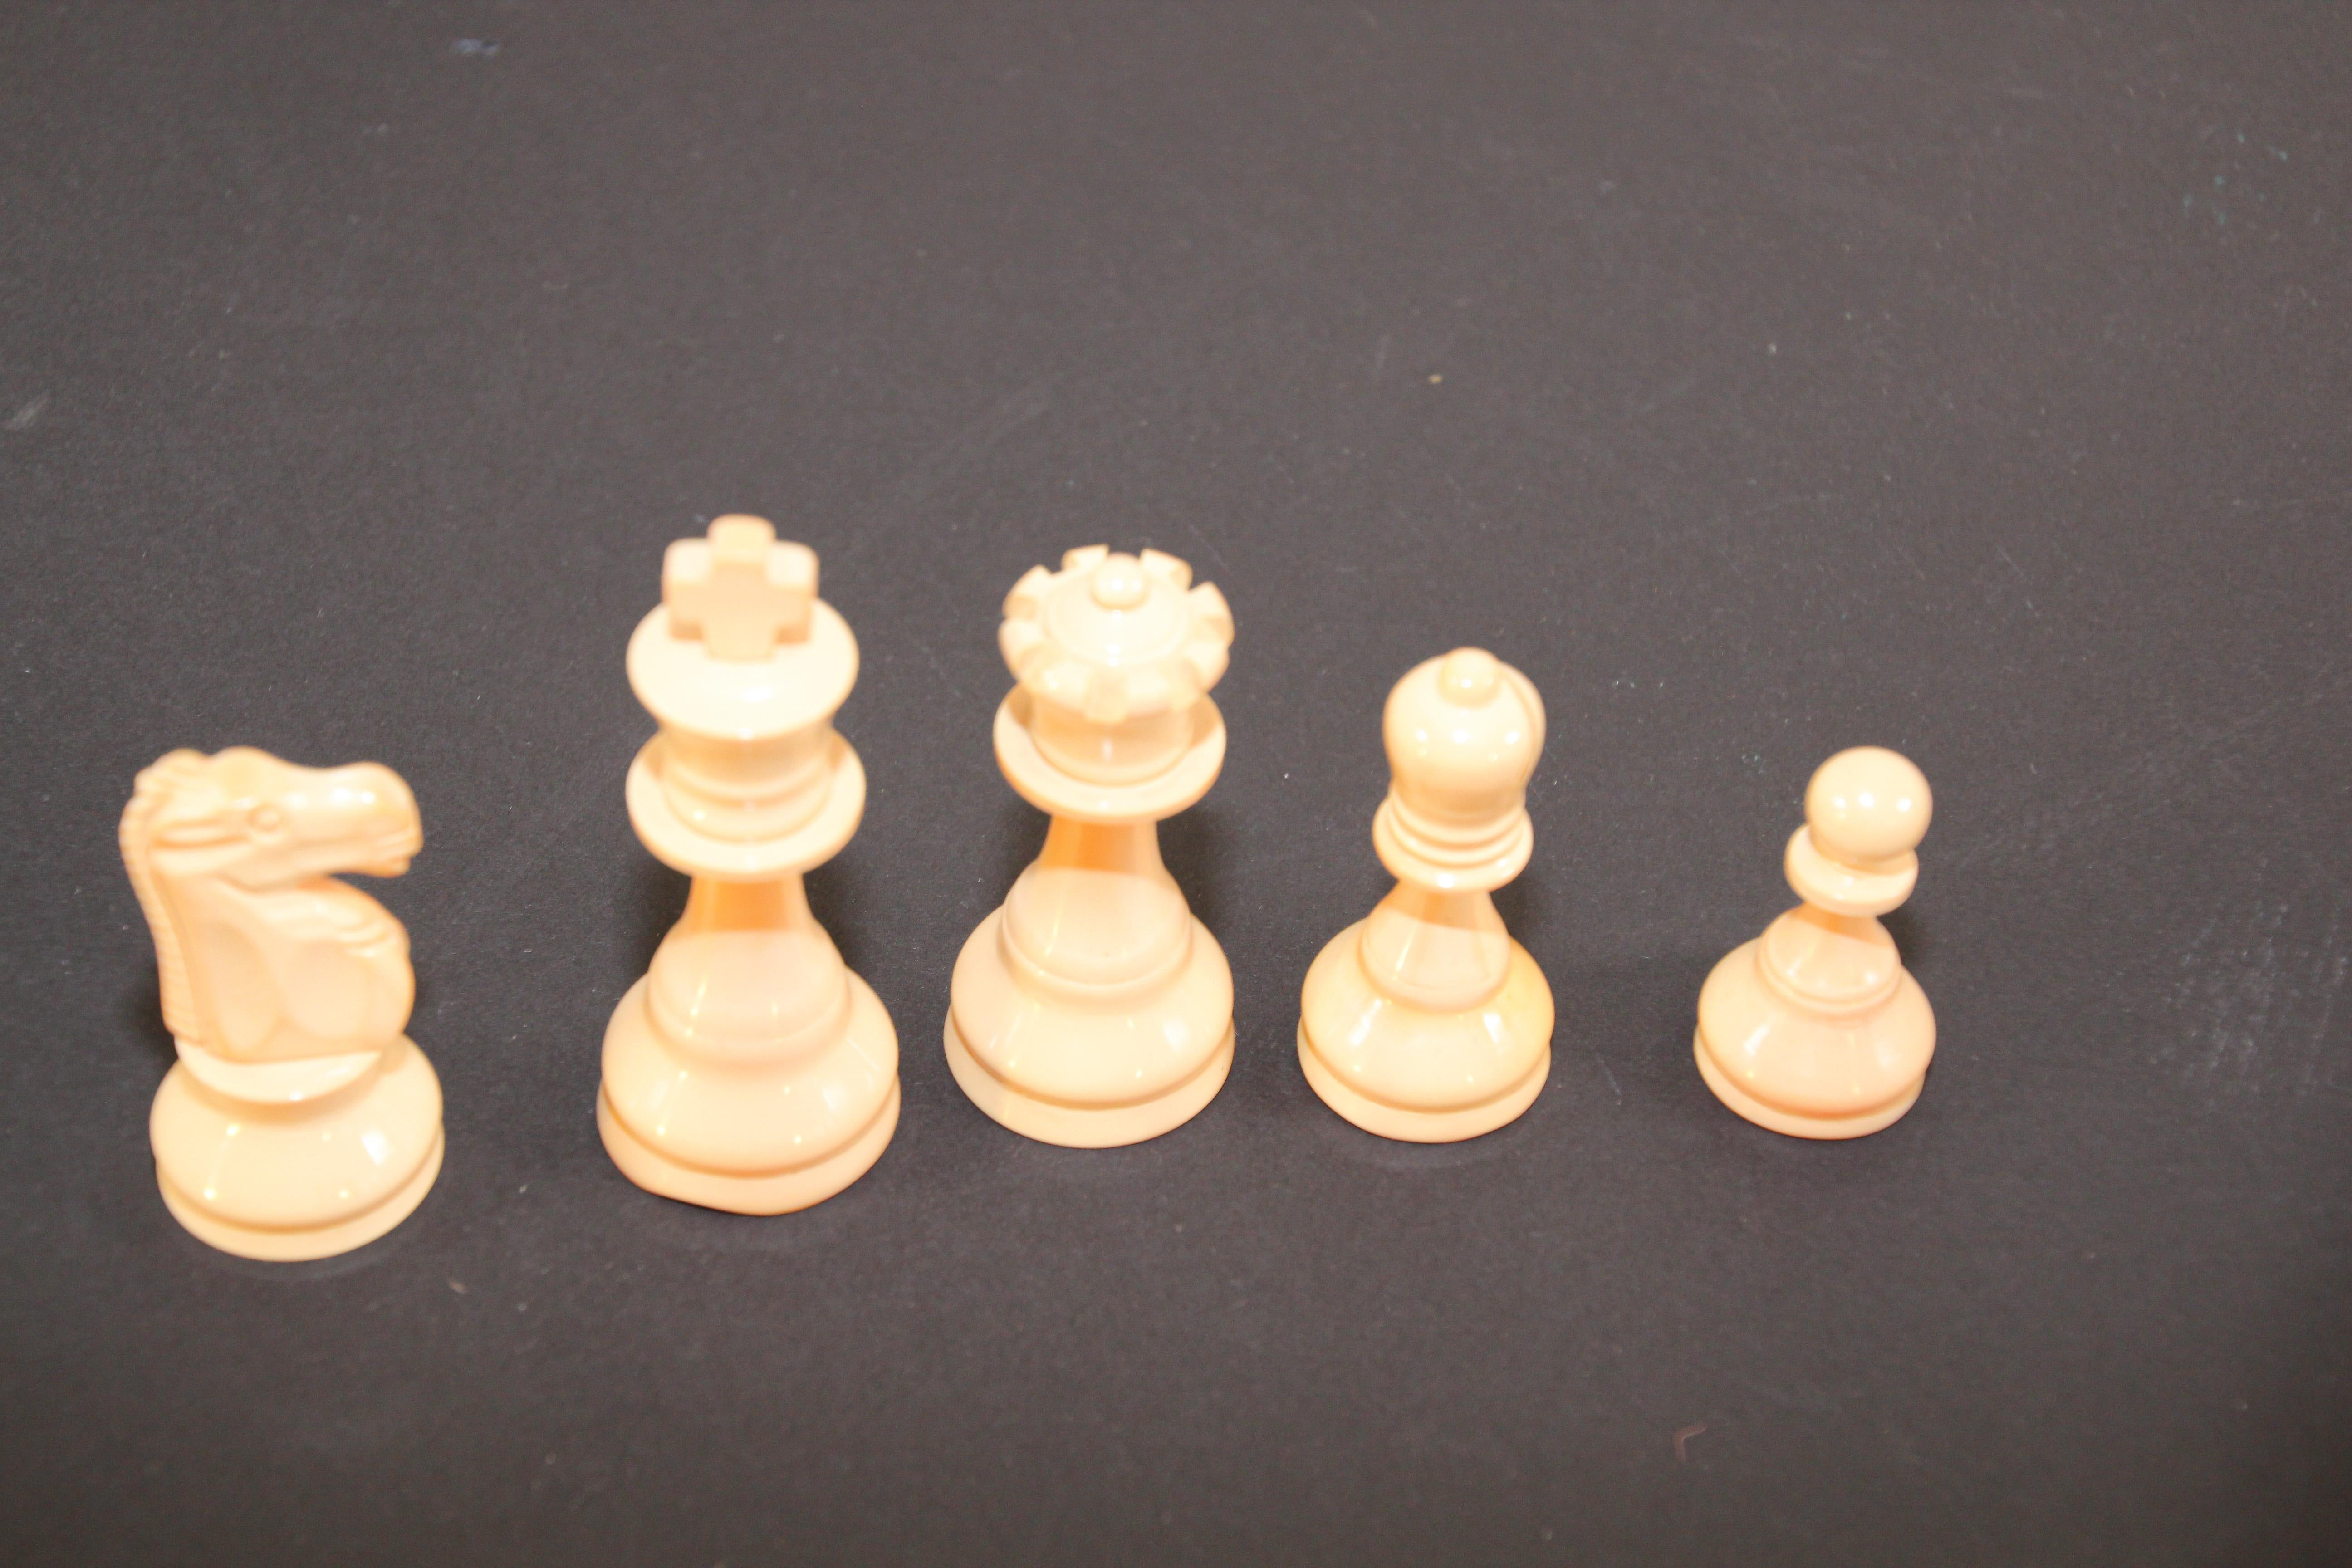 bakelite chess set